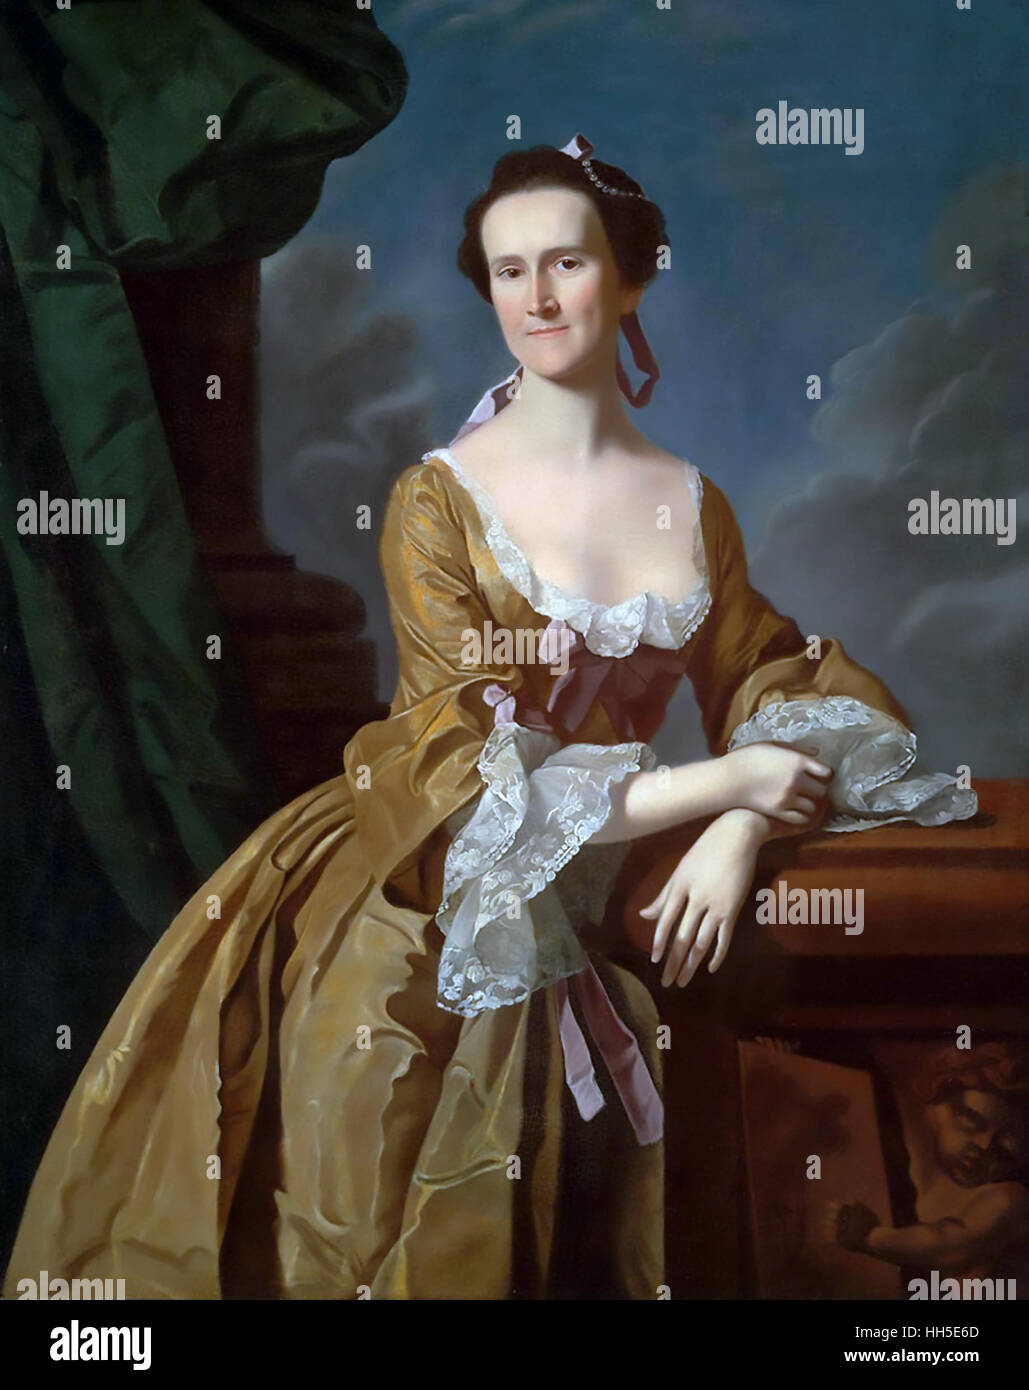 KATHARINE GREENE AMORY (1731-1777) La société américaine dame qui tient un journal durant la Révolution américaine. Peinture sur 1762. Banque D'Images